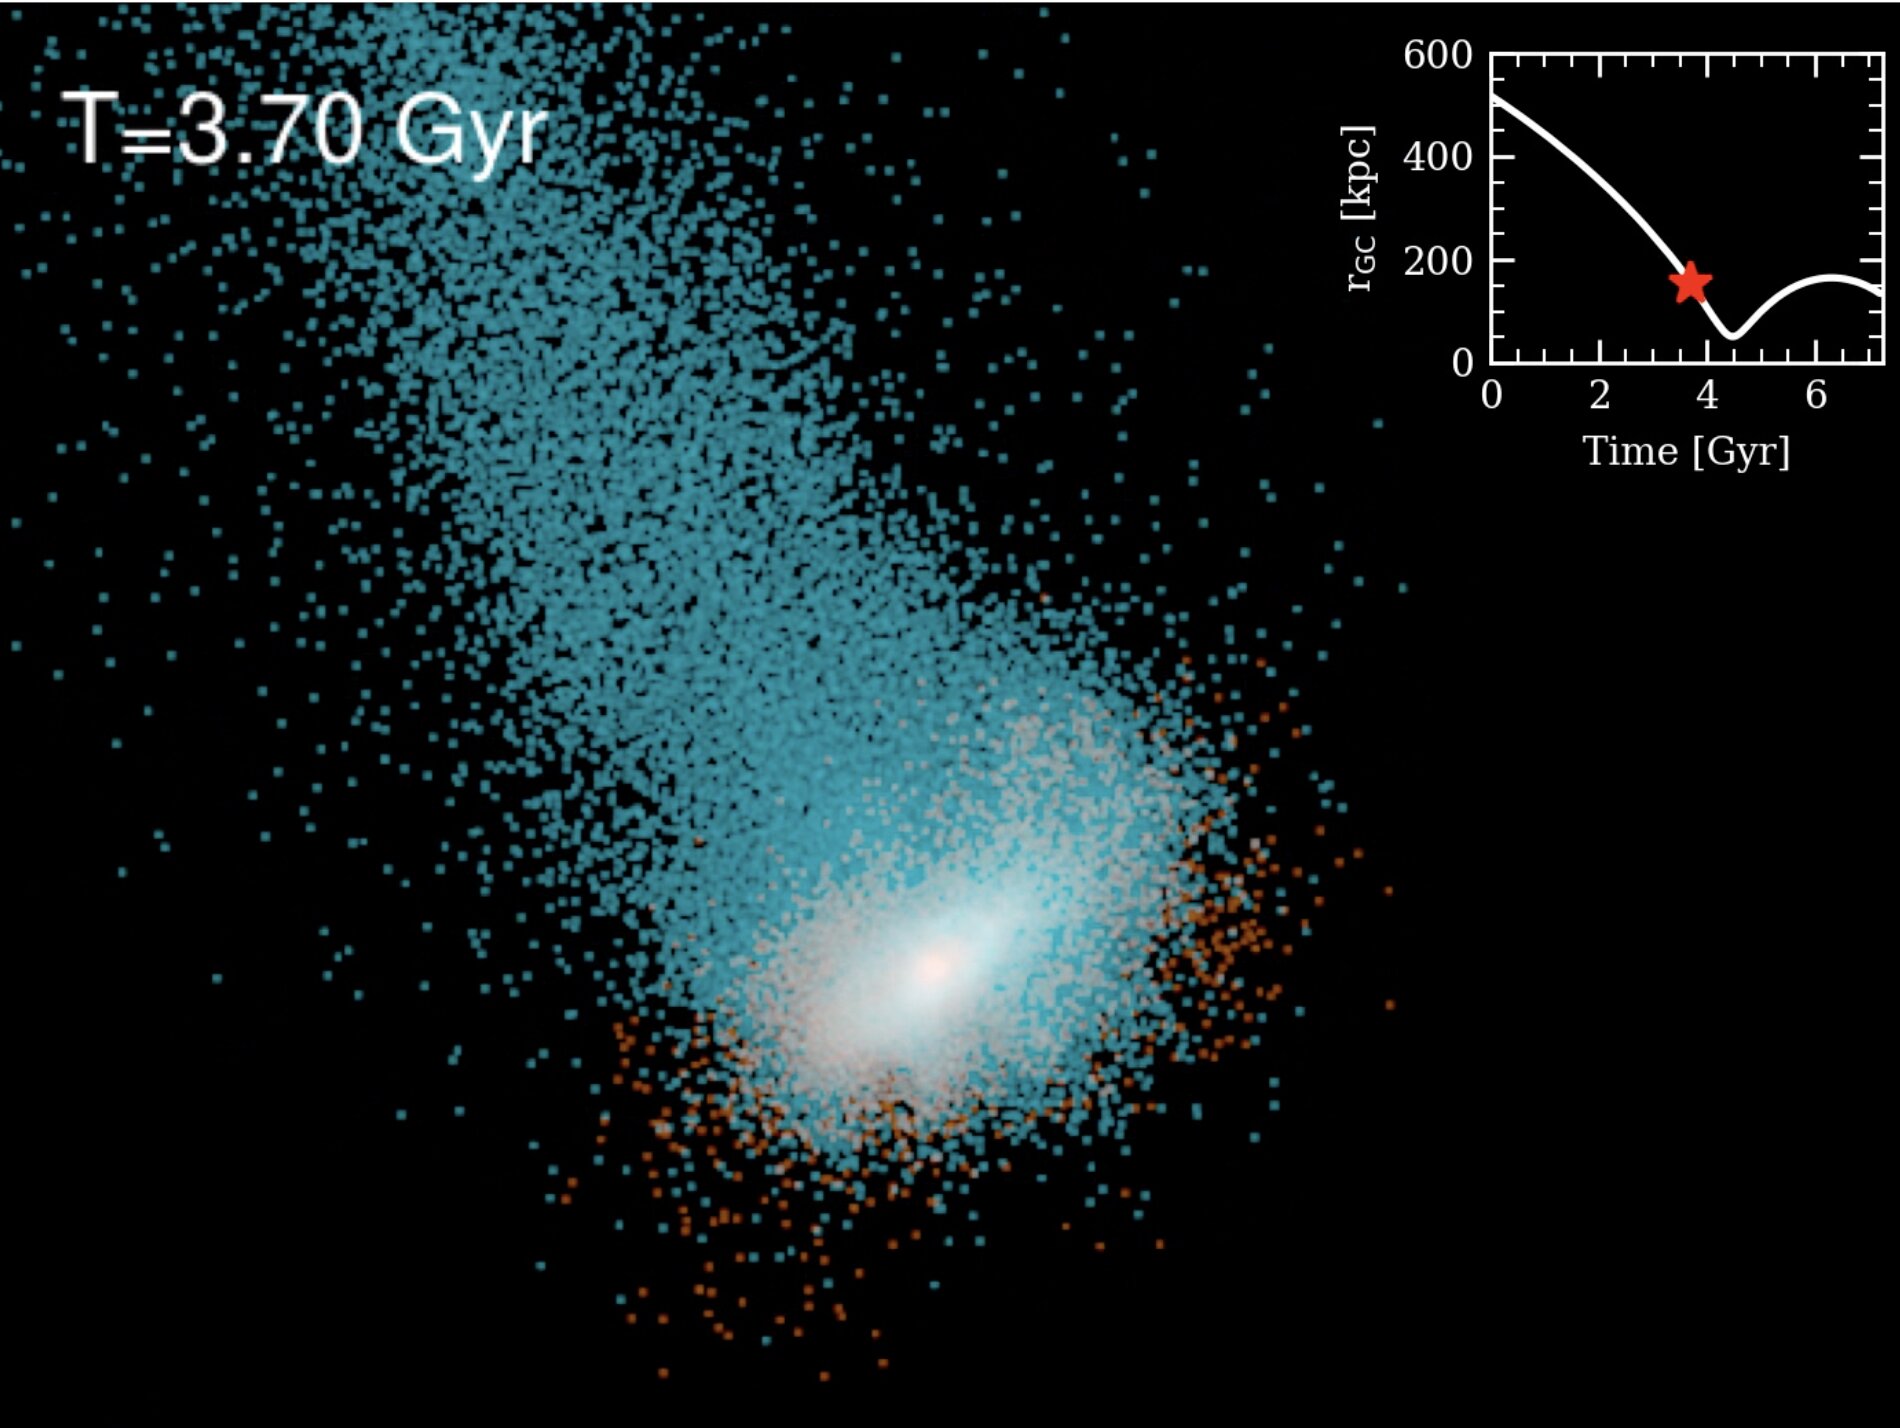 Immagine da una simulazione della trasformazione di una galassia ricca di gas e dominata dalla rotazione in una galassia nana sferica. Qui viene mostrato un analogo della galassia nana dello Scultore